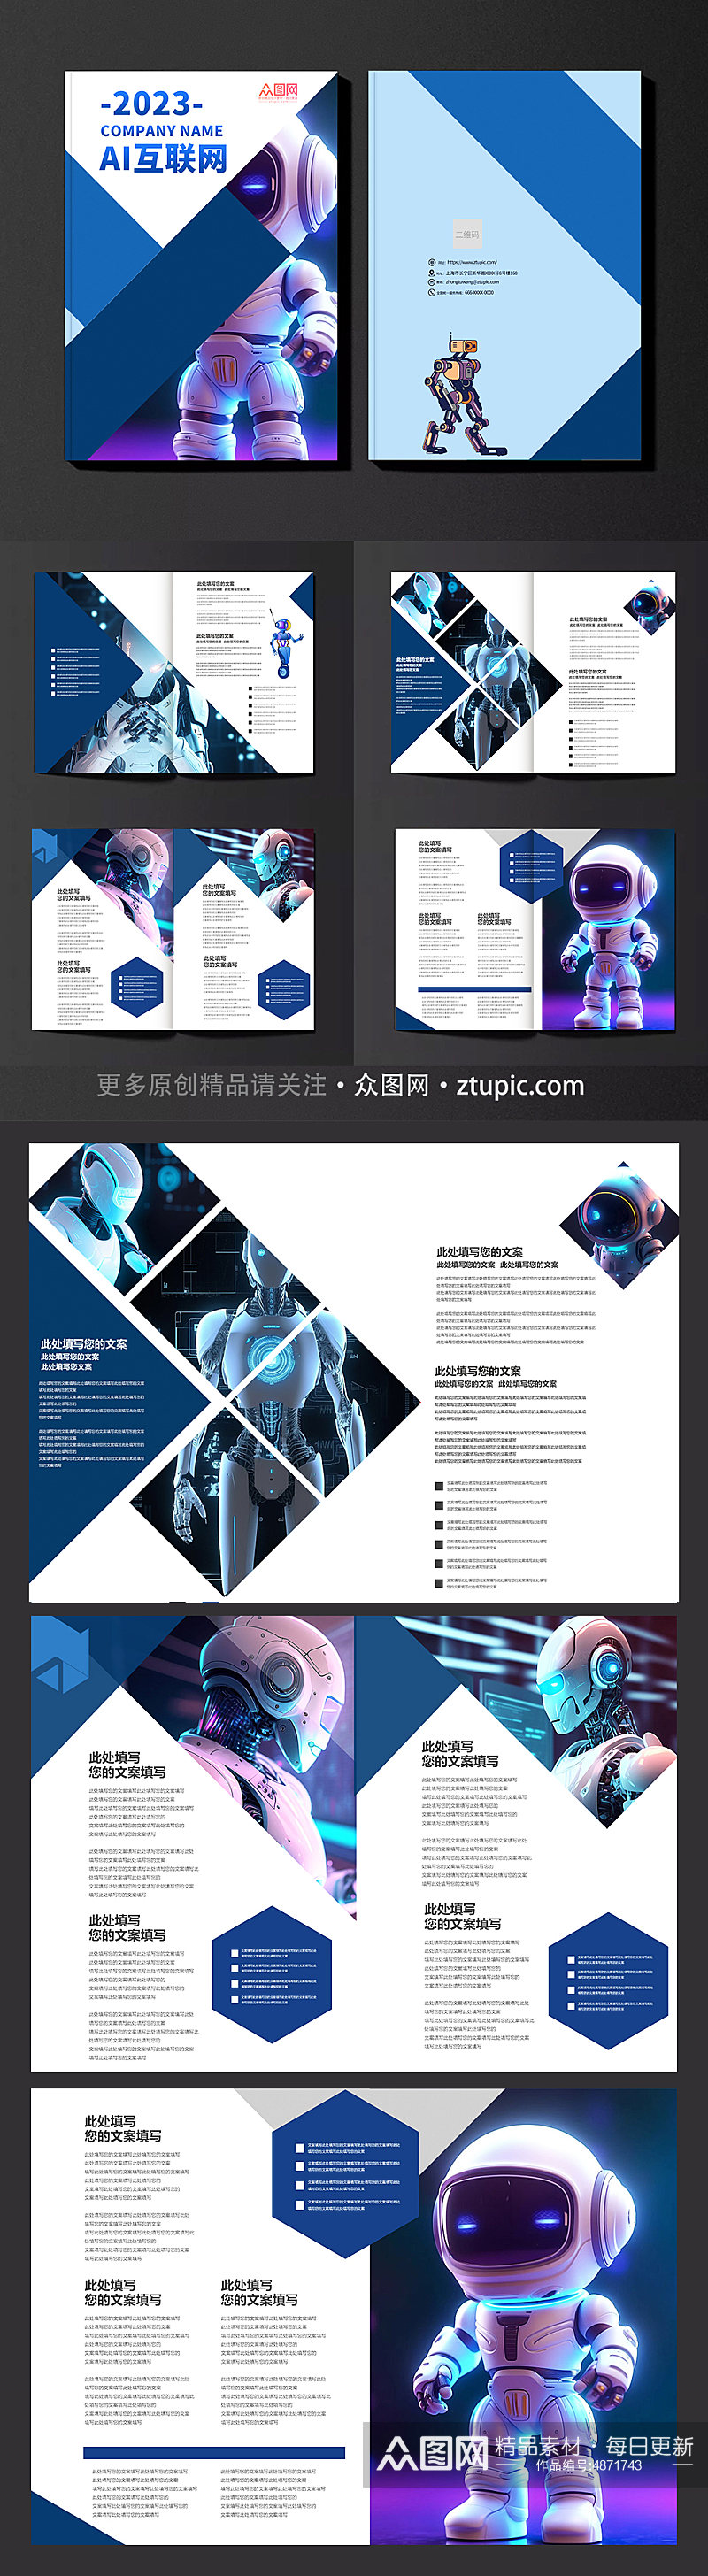 蓝色人工智能AI互联网科技宣传画册手册素材